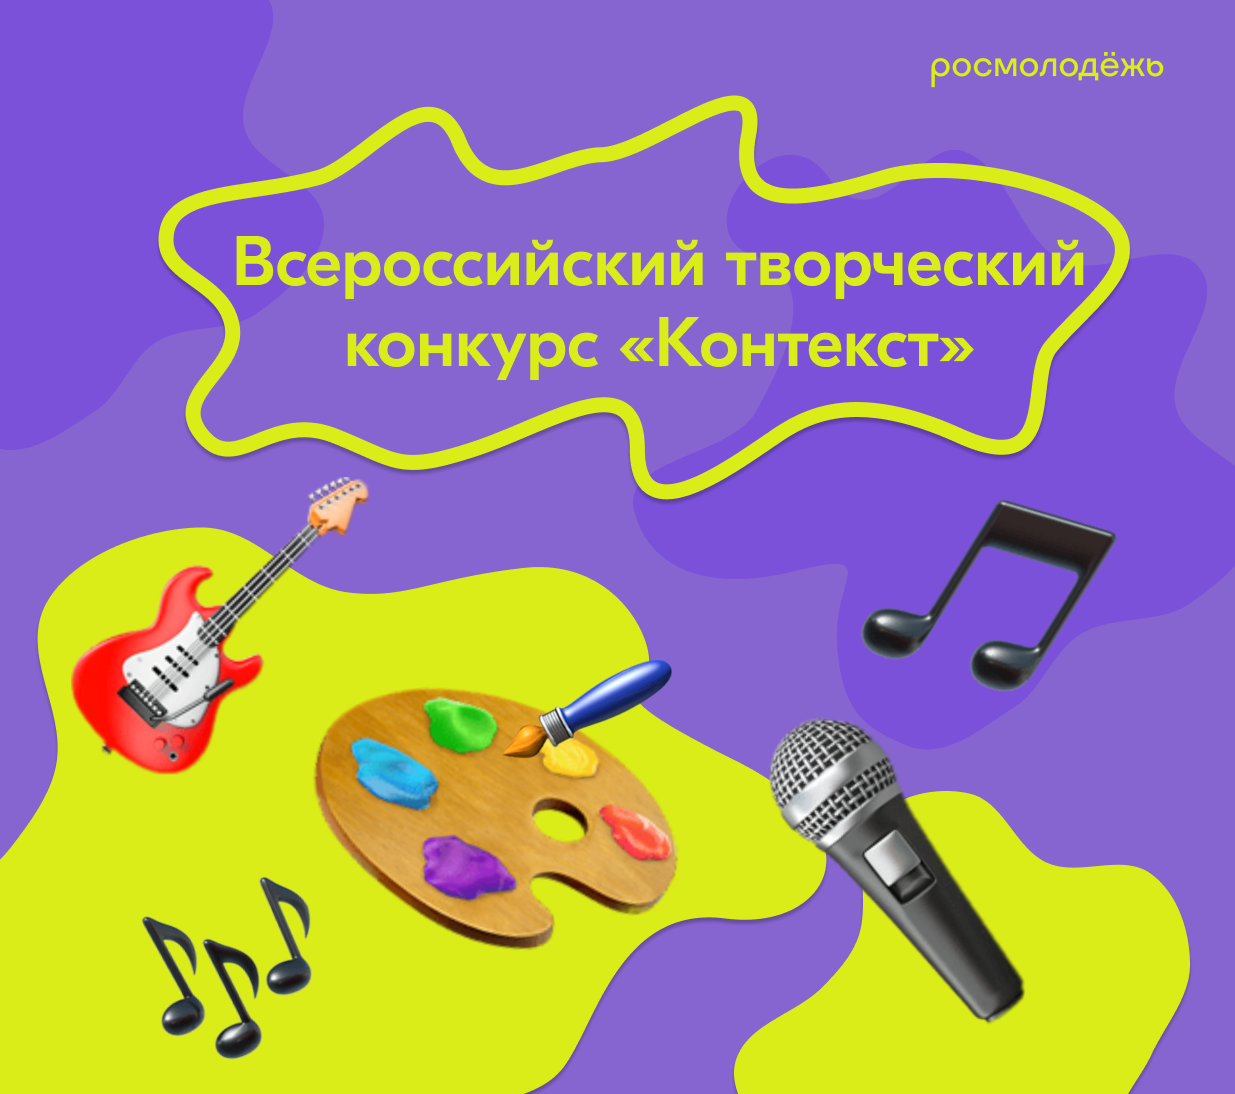 Запустился Всероссийский творческий конкурс «КОНТЕКСТ» о подвигах героев СВО и добровольцах